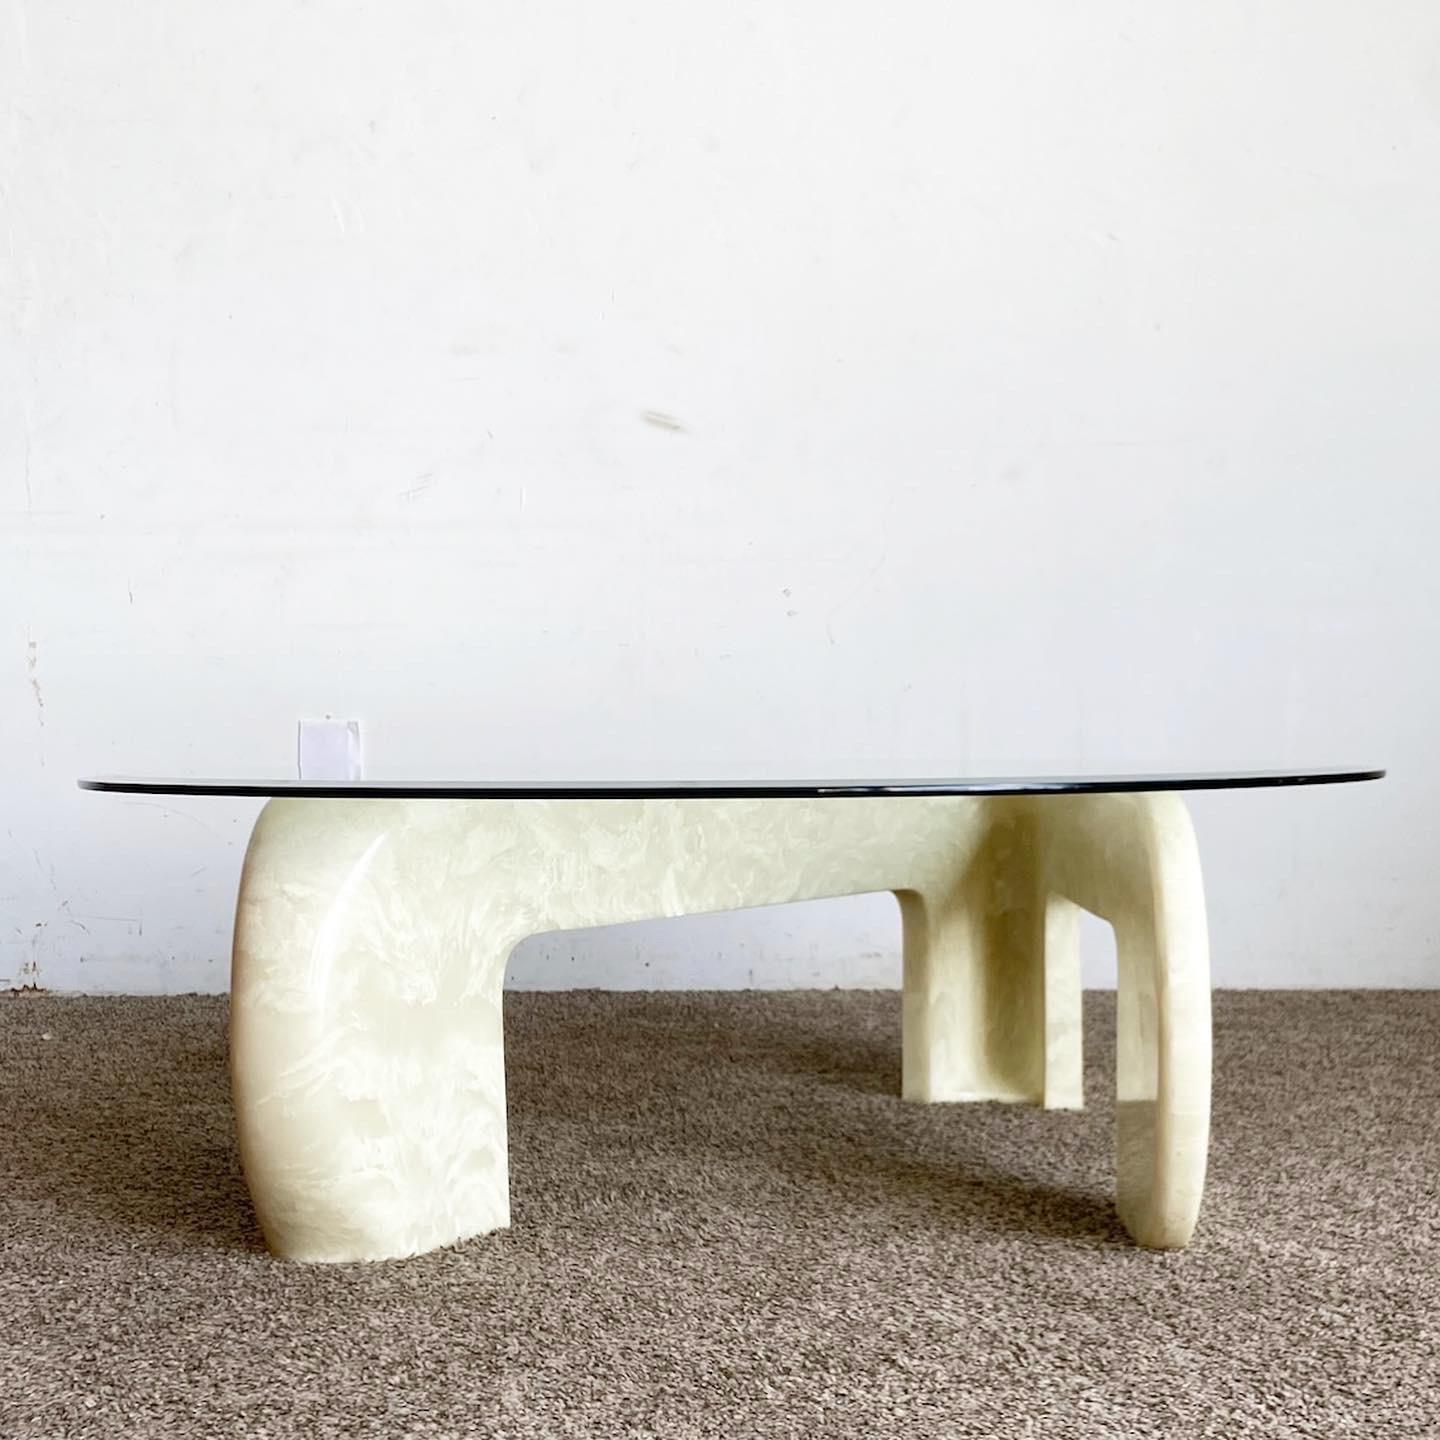 Table en Z postmoderne en faux marbre en fibre de verre : un plateau en verre épuré rencontre une base en forme de Z artistiquement conçue pour apporter une touche distinctive dans les espaces contemporains.

Table Z en faux marbre capturant